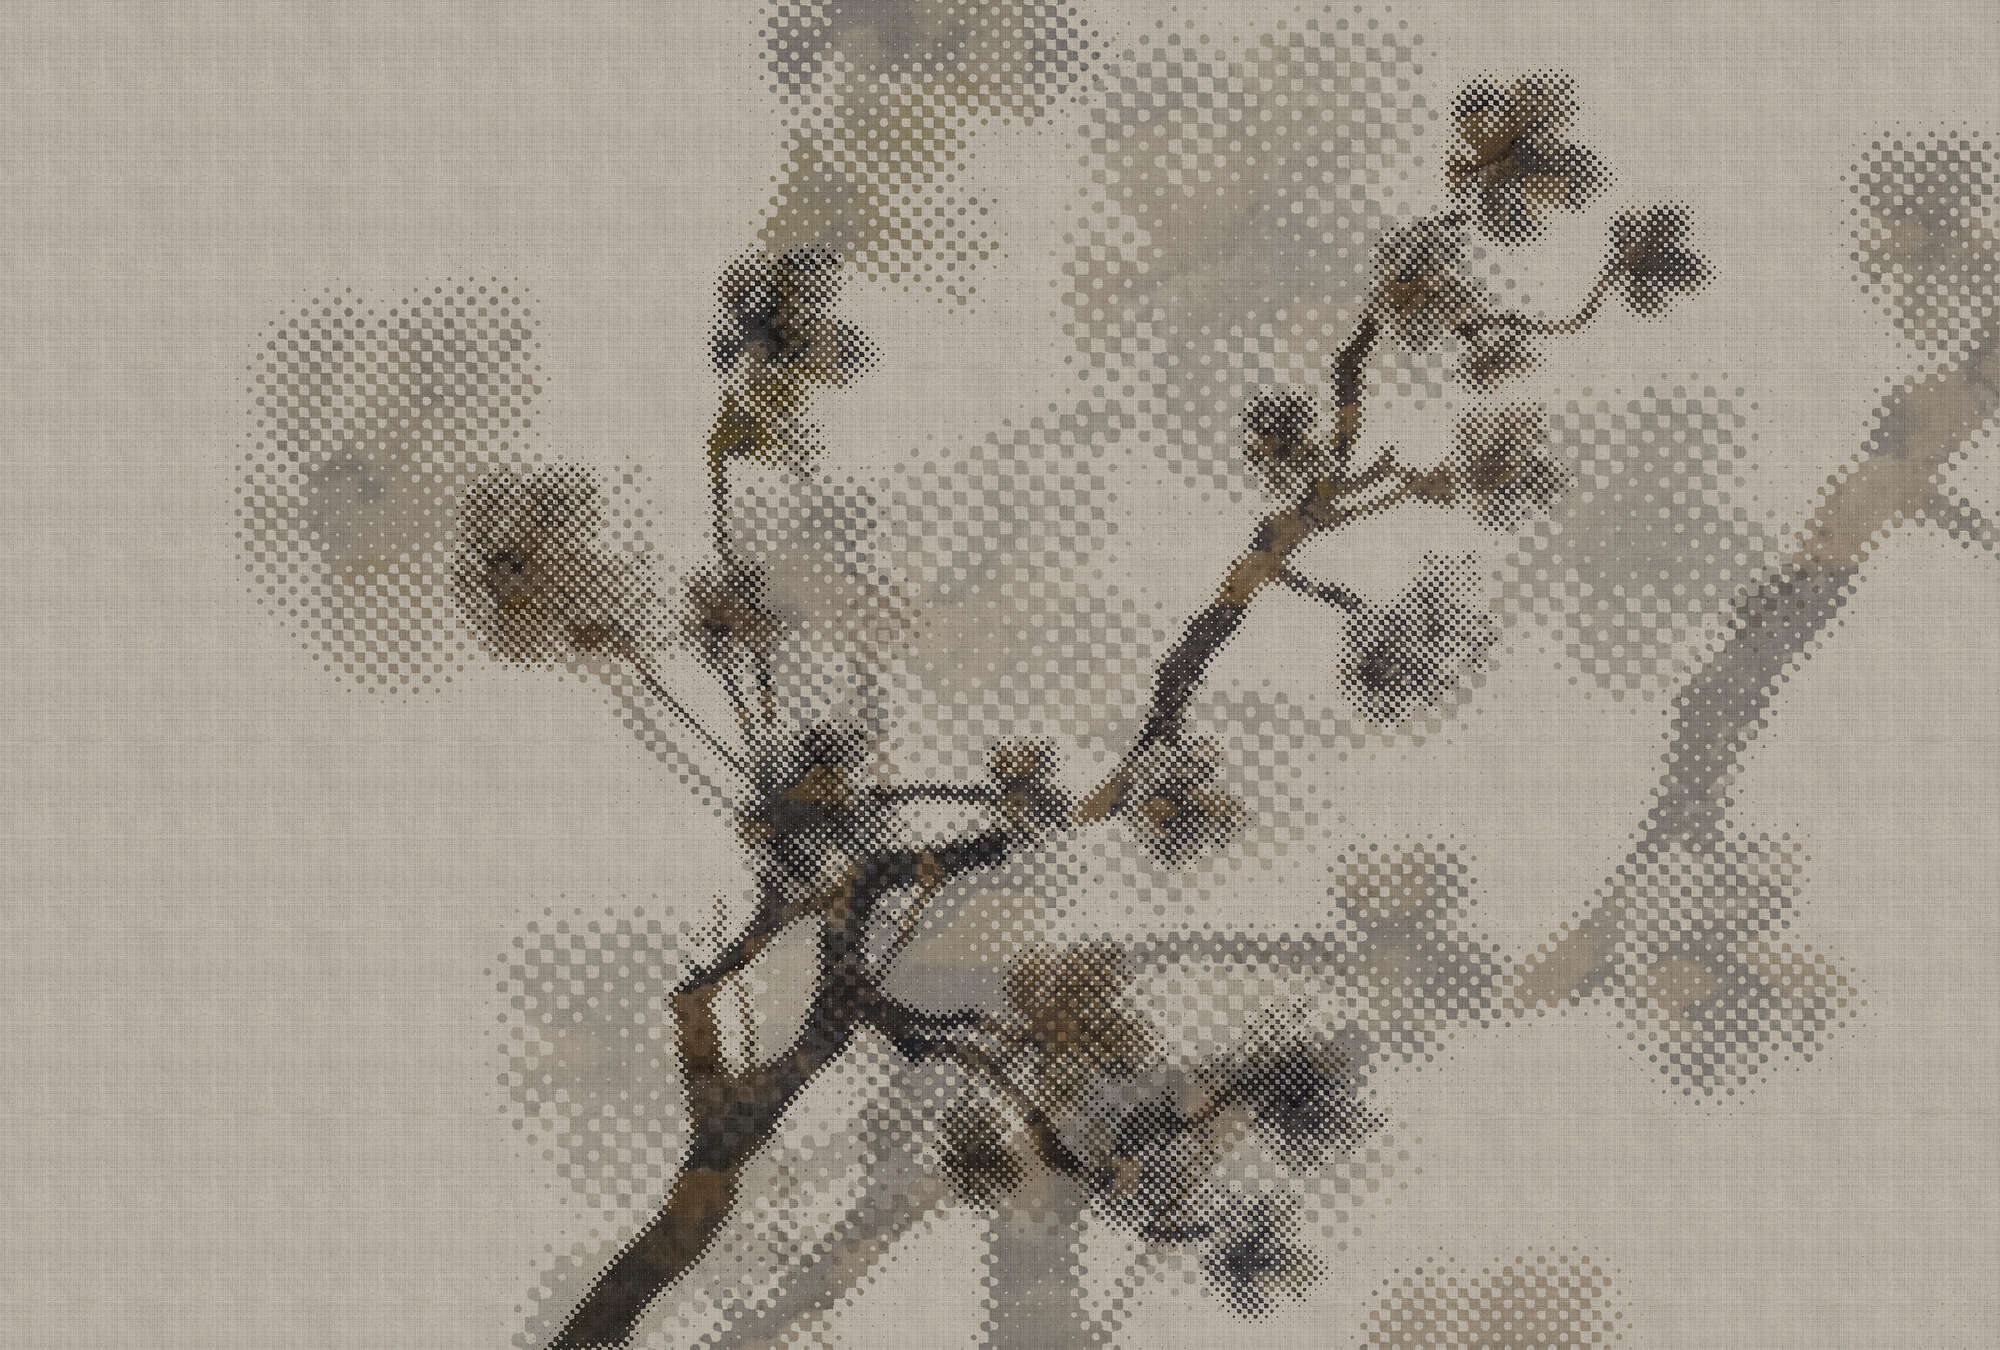             Twigs 1 - Papel pintado fotográfico moderno con motivo natural en estructura de lino natural - Topo | Estructura no tejida
        